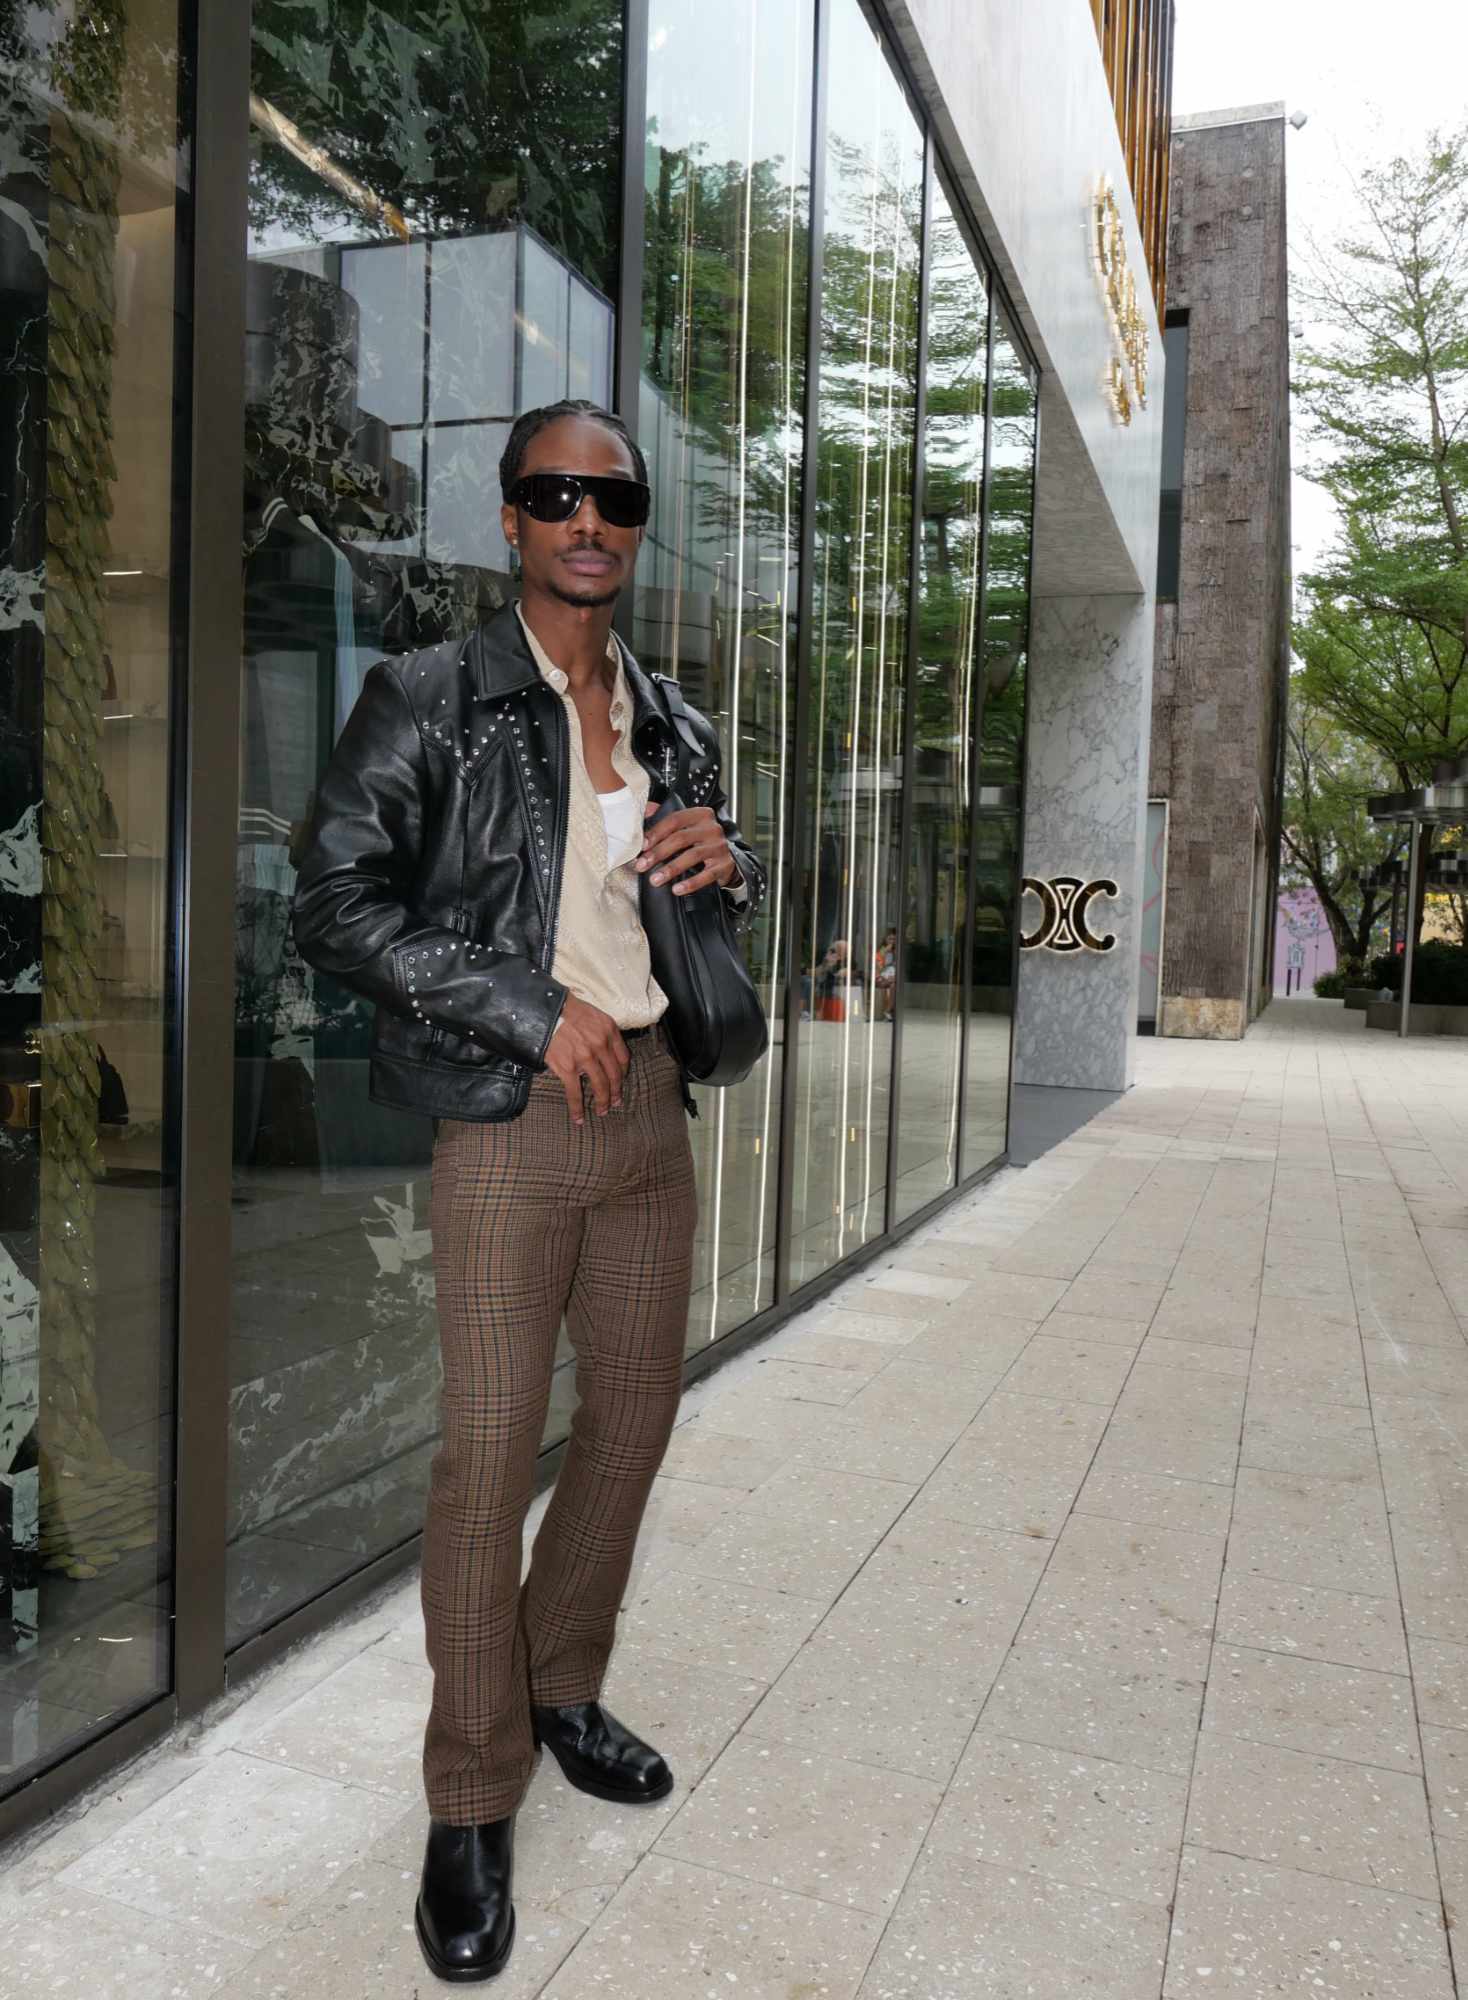 Lamar Johnson wearing CELINE in the CELINE Miami store